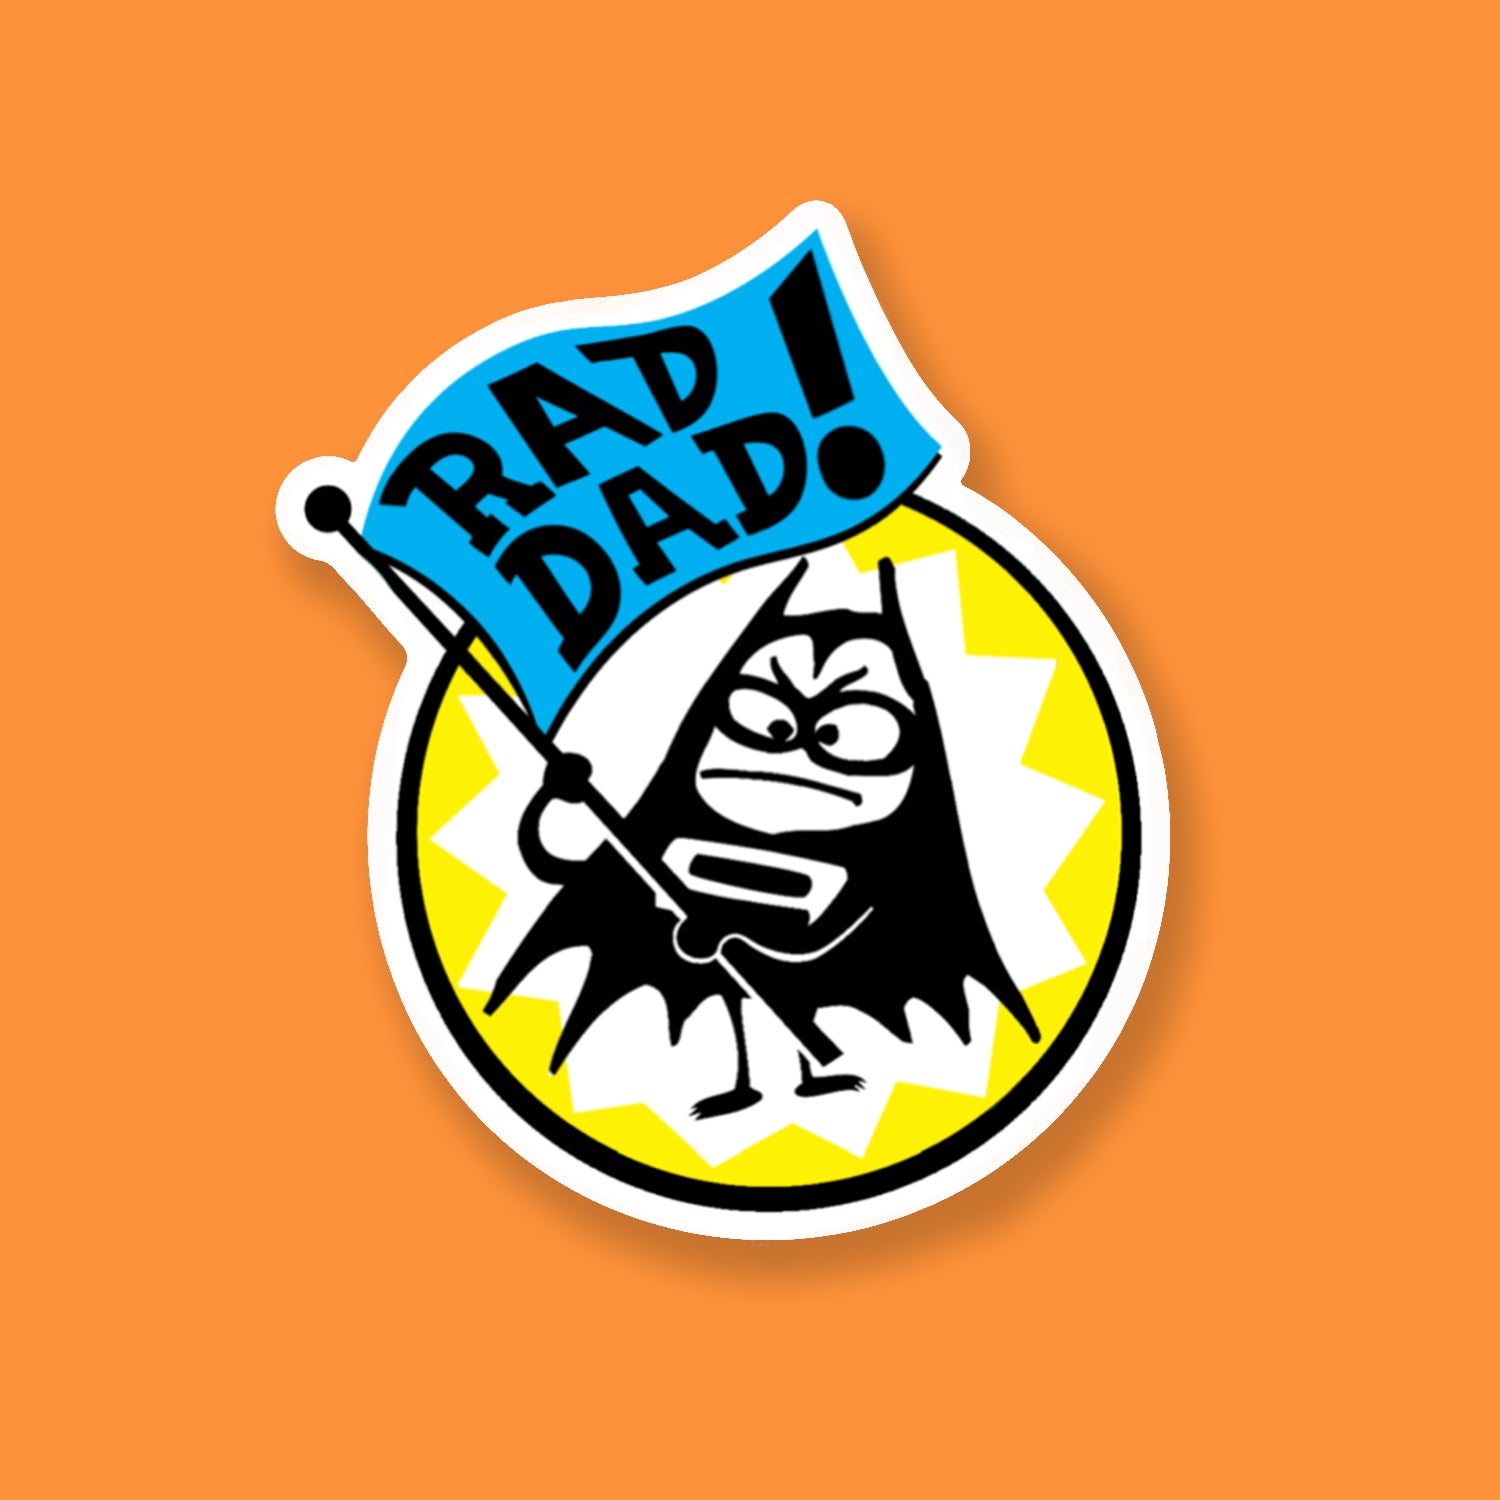 Lil Bat "Rad Dad!" Deluxe Decal